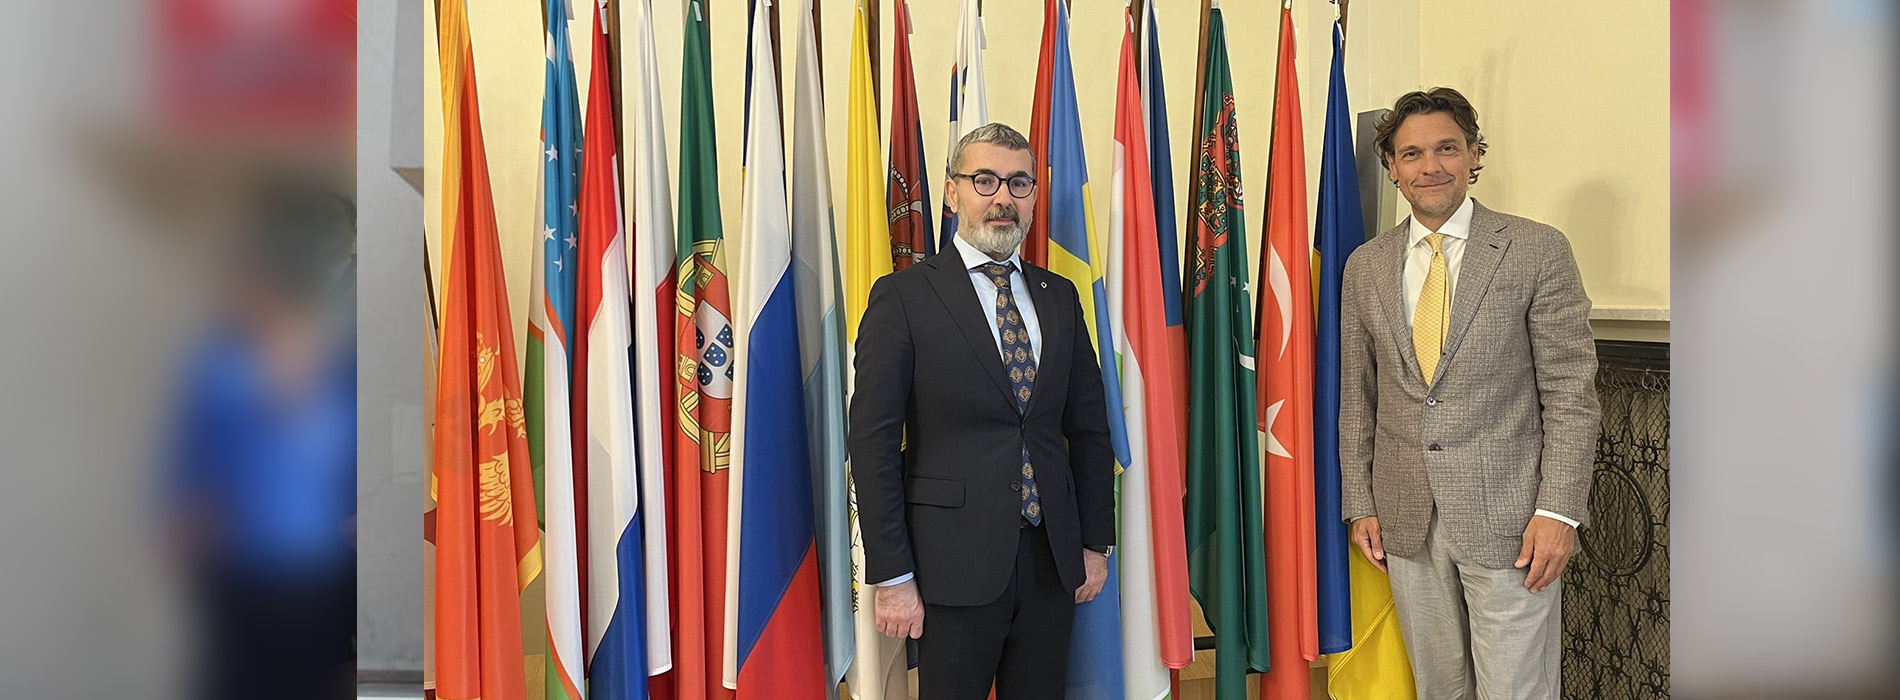 Başkanımız Prof. Dr. Muharrem Kılıç Varşova’da Temaslarda Bulundu